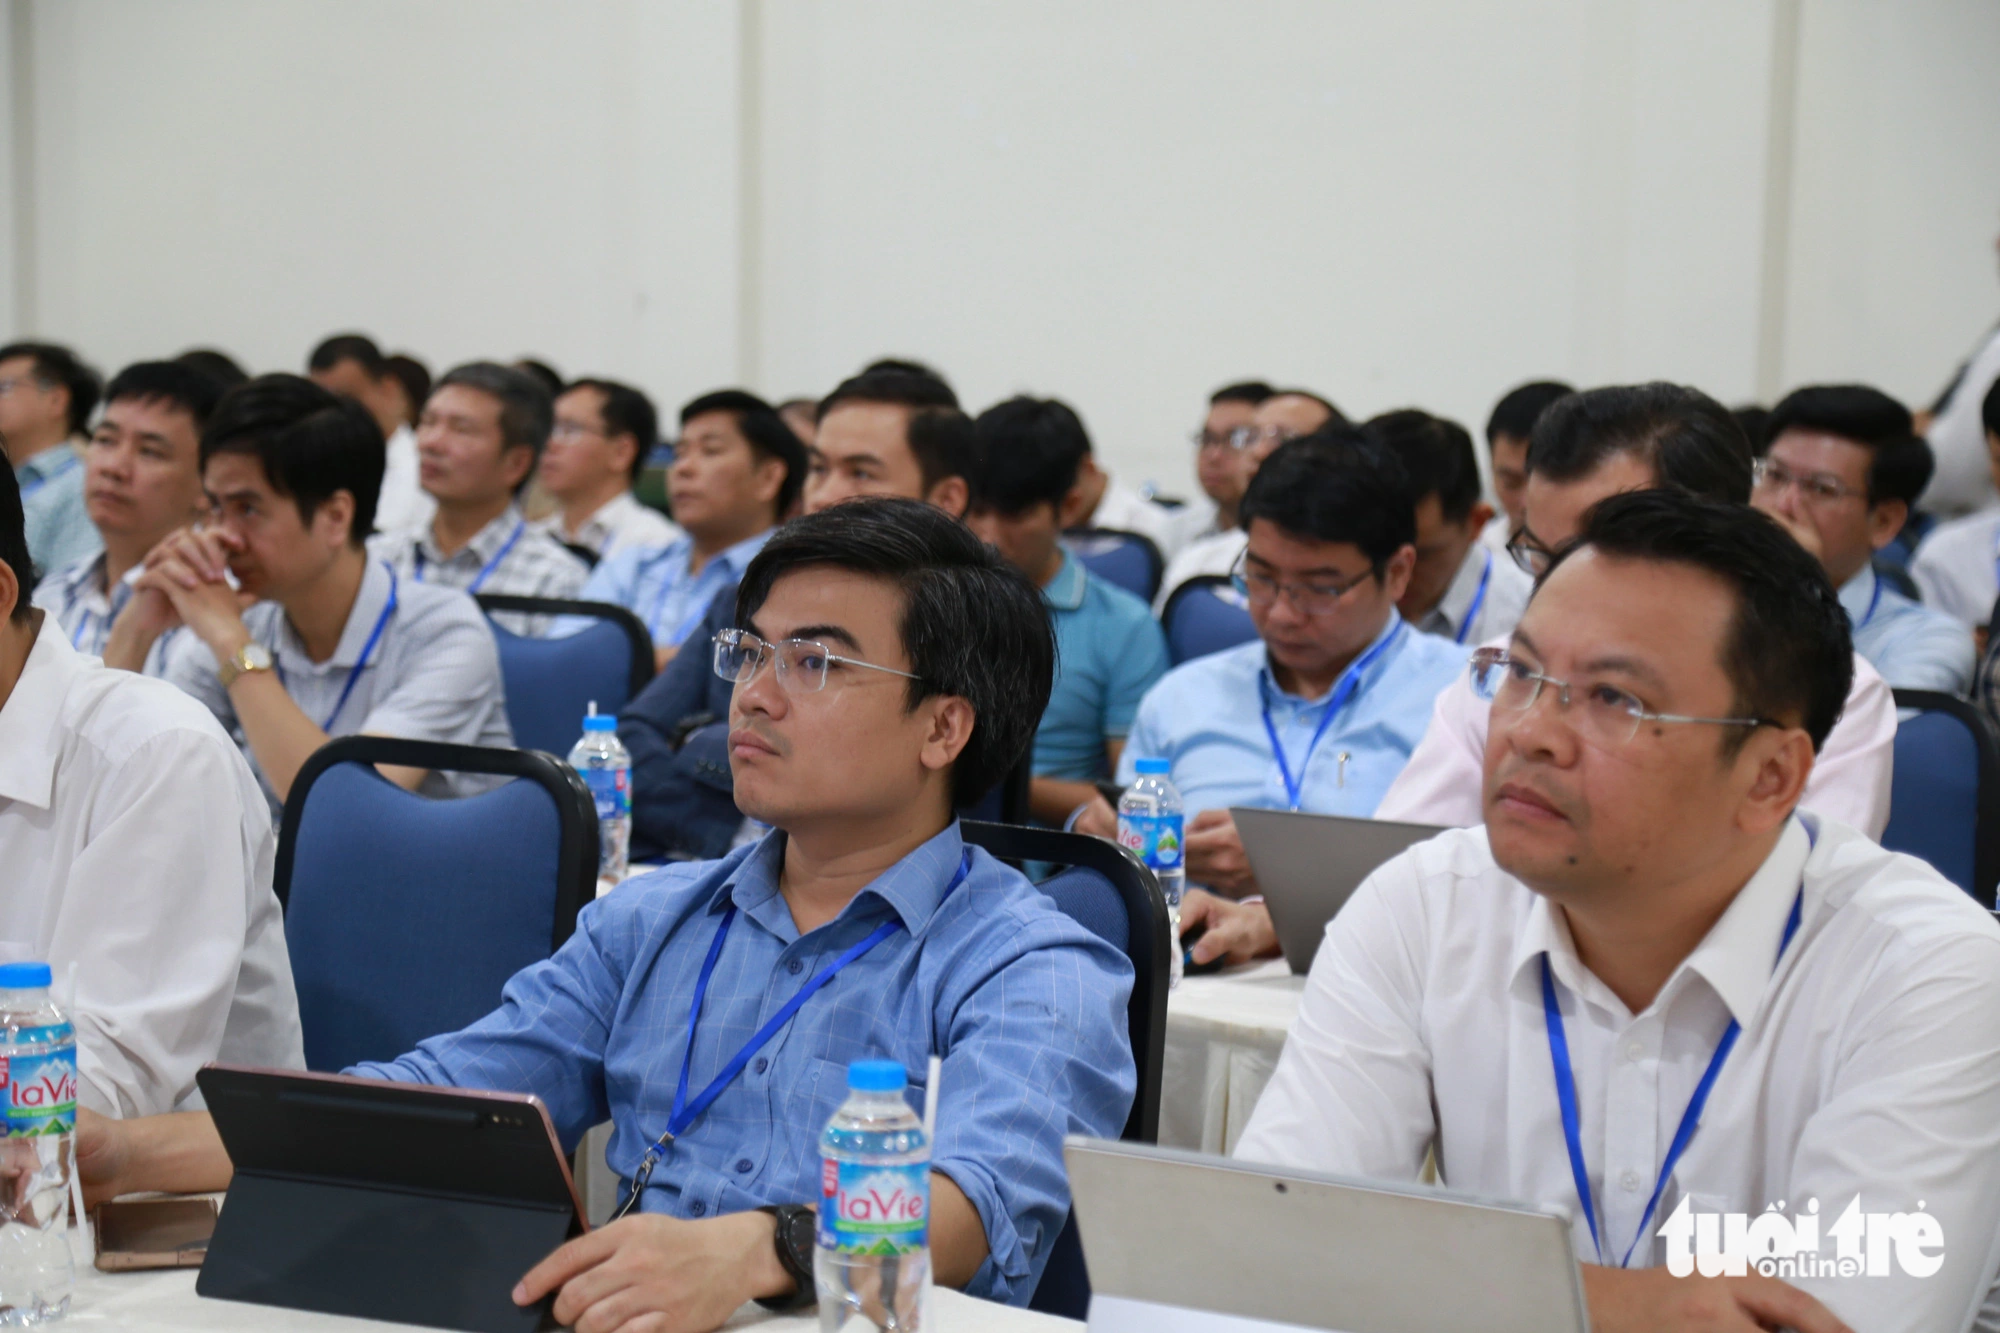 Hội thảo thu hút sự tham gia của đại diện gần 40 cơ sở giáo dục đại học của Việt Nam - Ảnh: ĐOÀN NHẠN